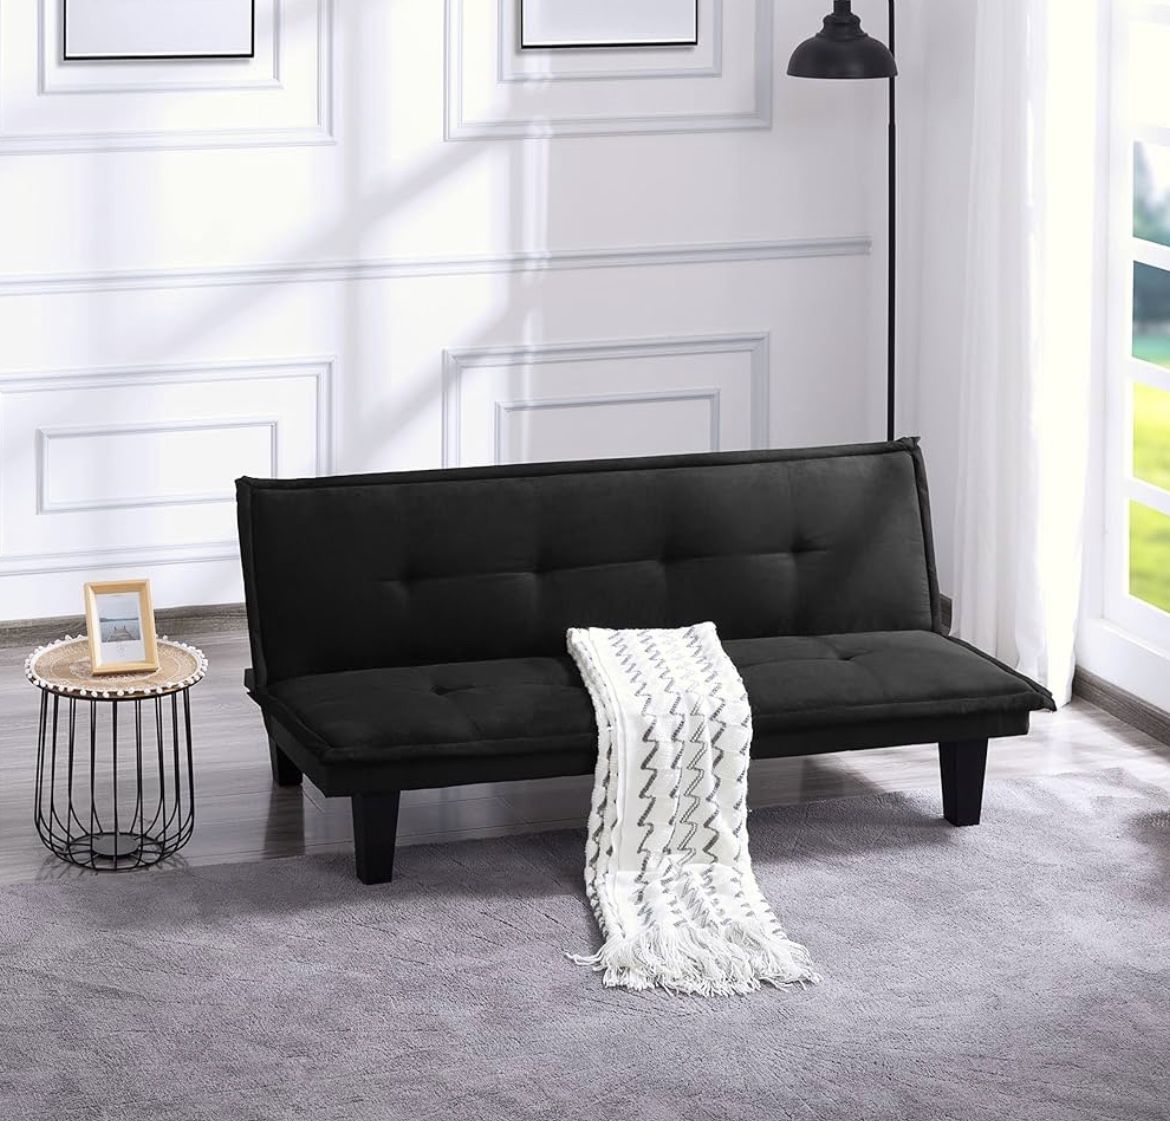 Brand New Futon Sofa Bed Black Color 